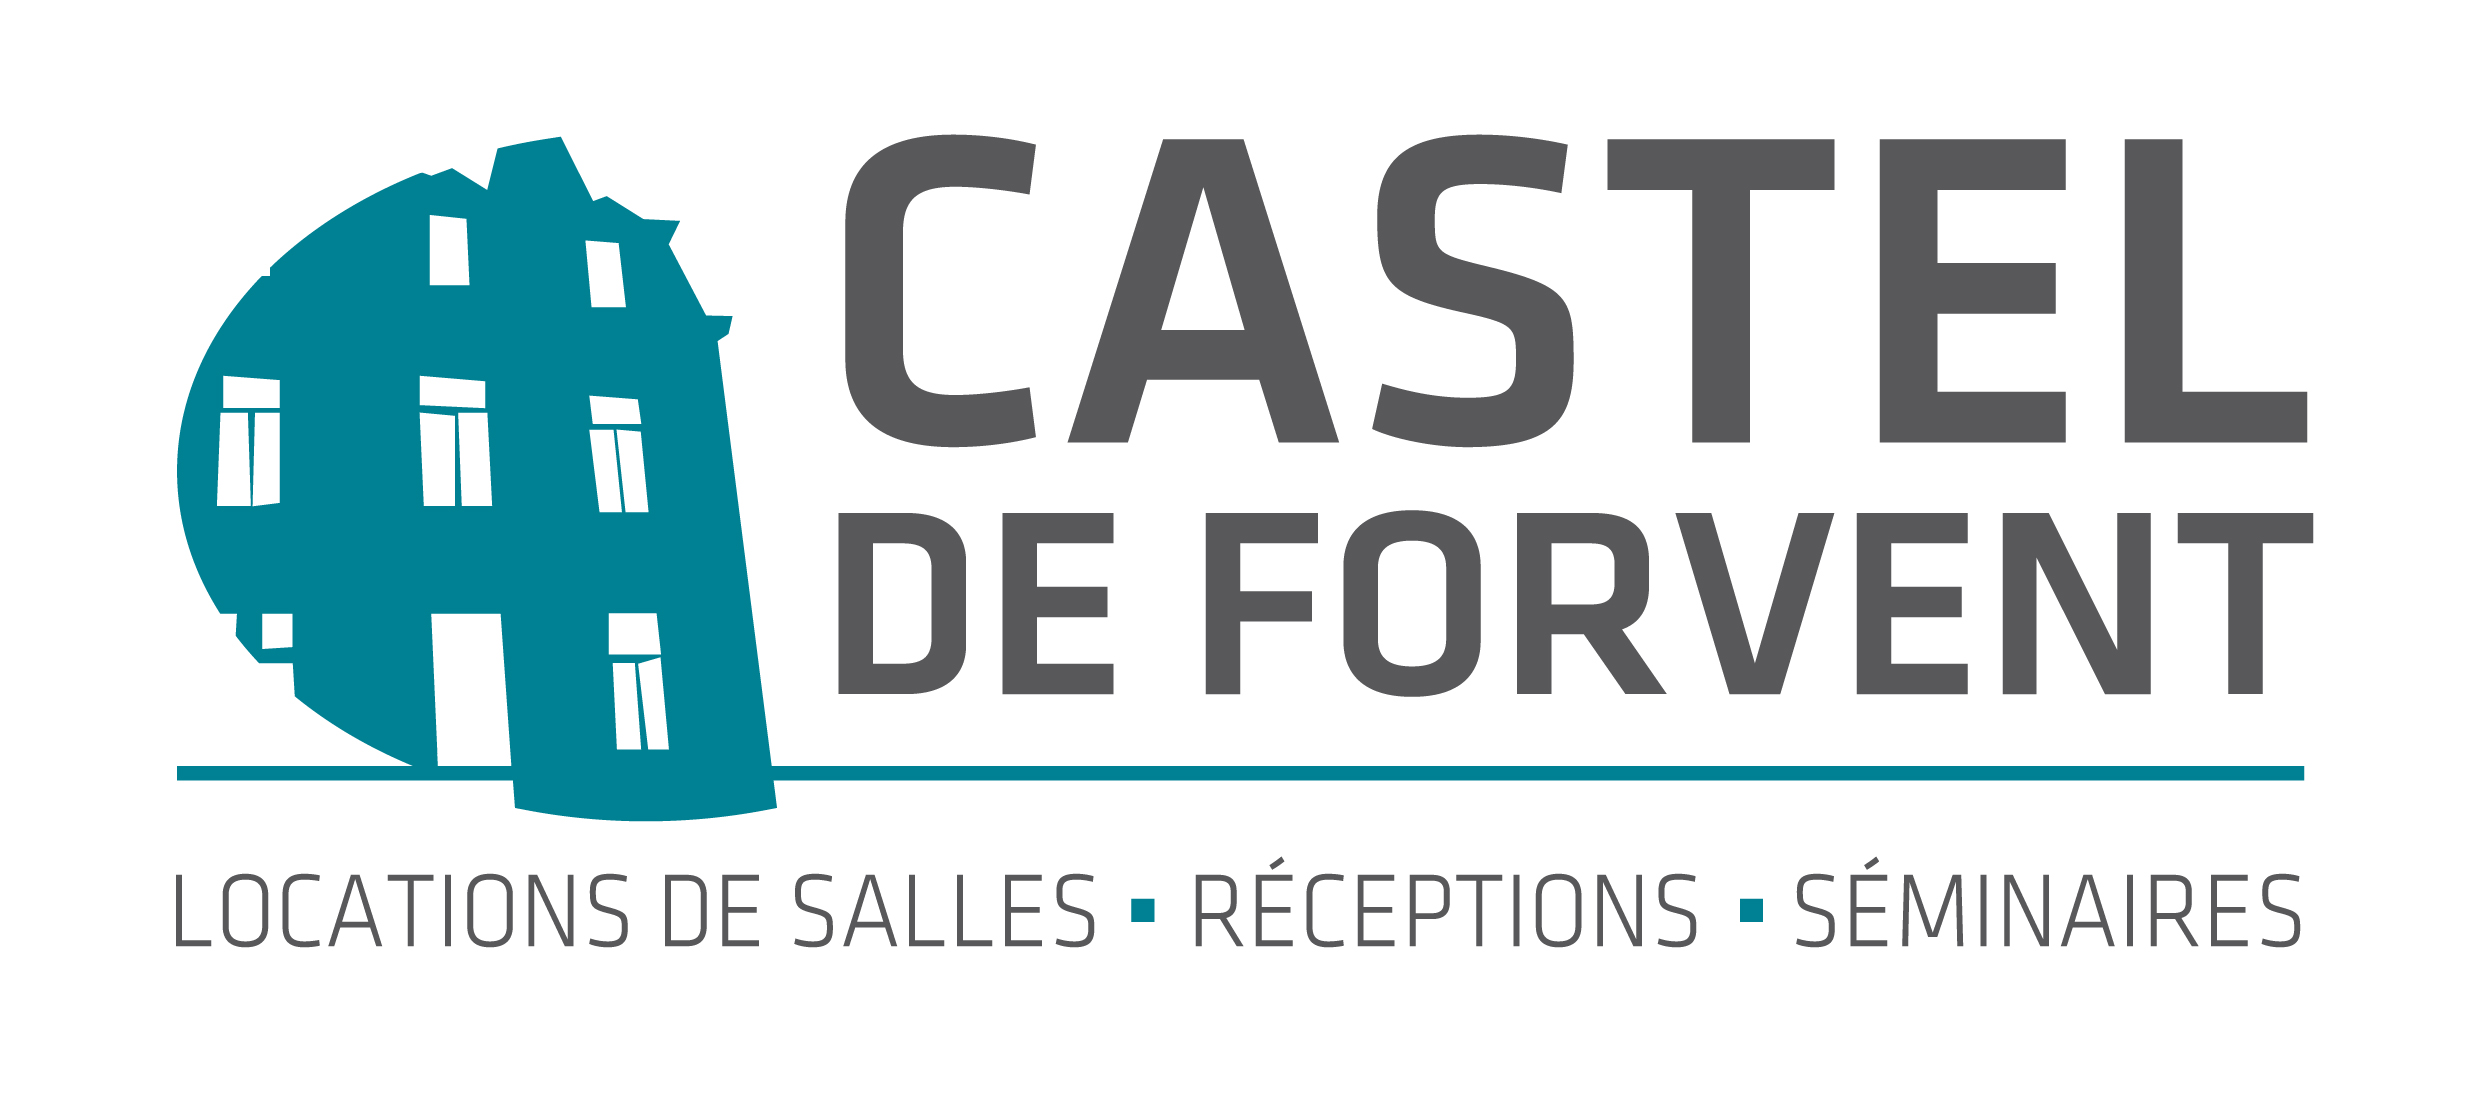 Le Castel de Forvent